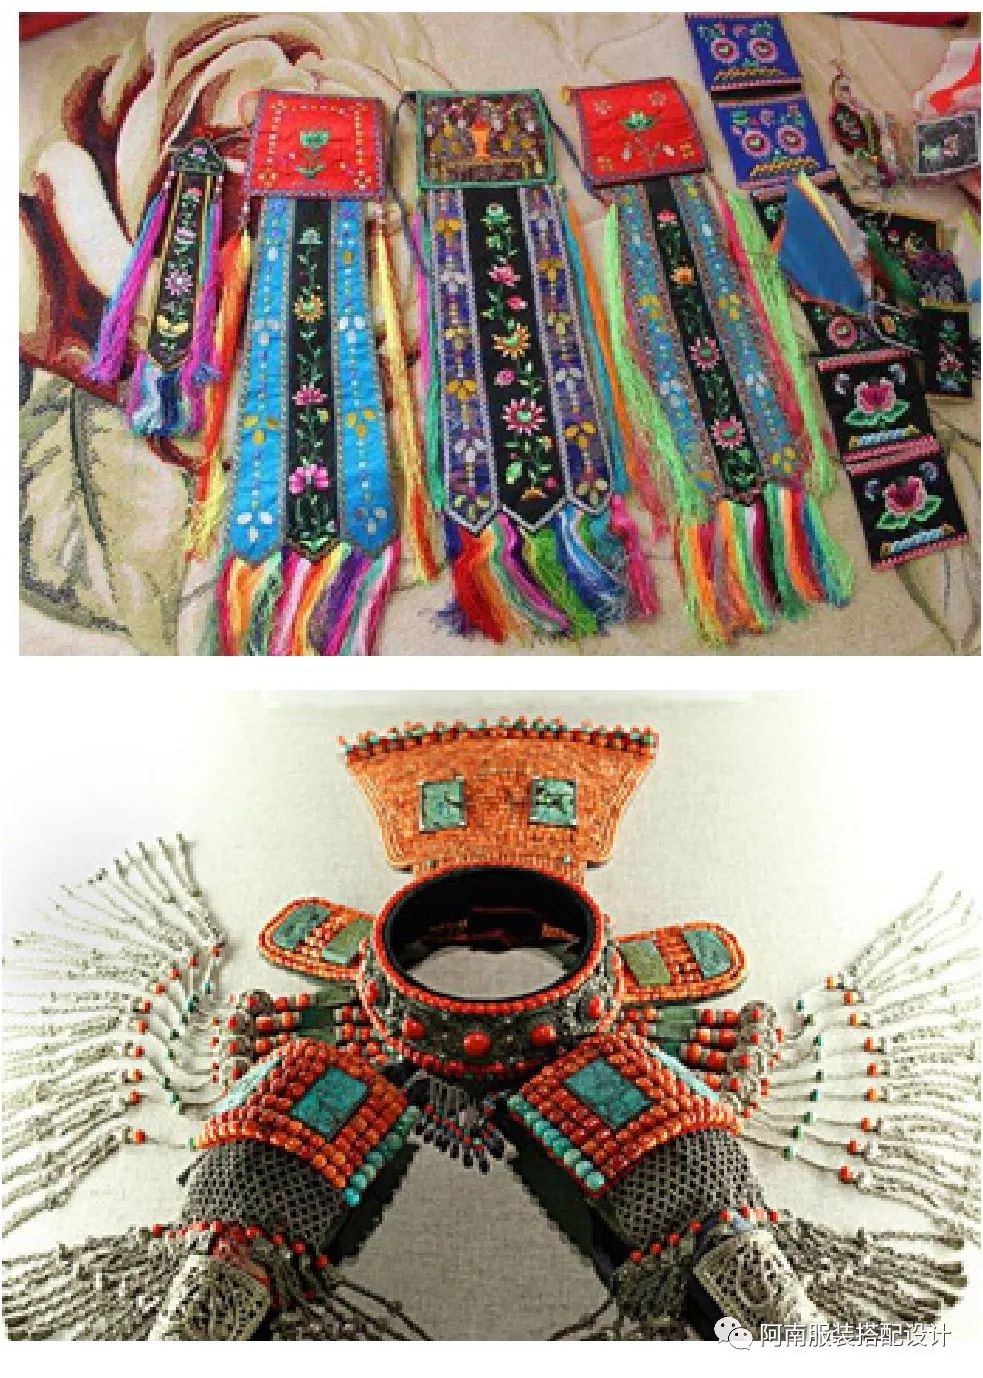 民族食品包装设计中蒙古族文化符号的运用 第9张